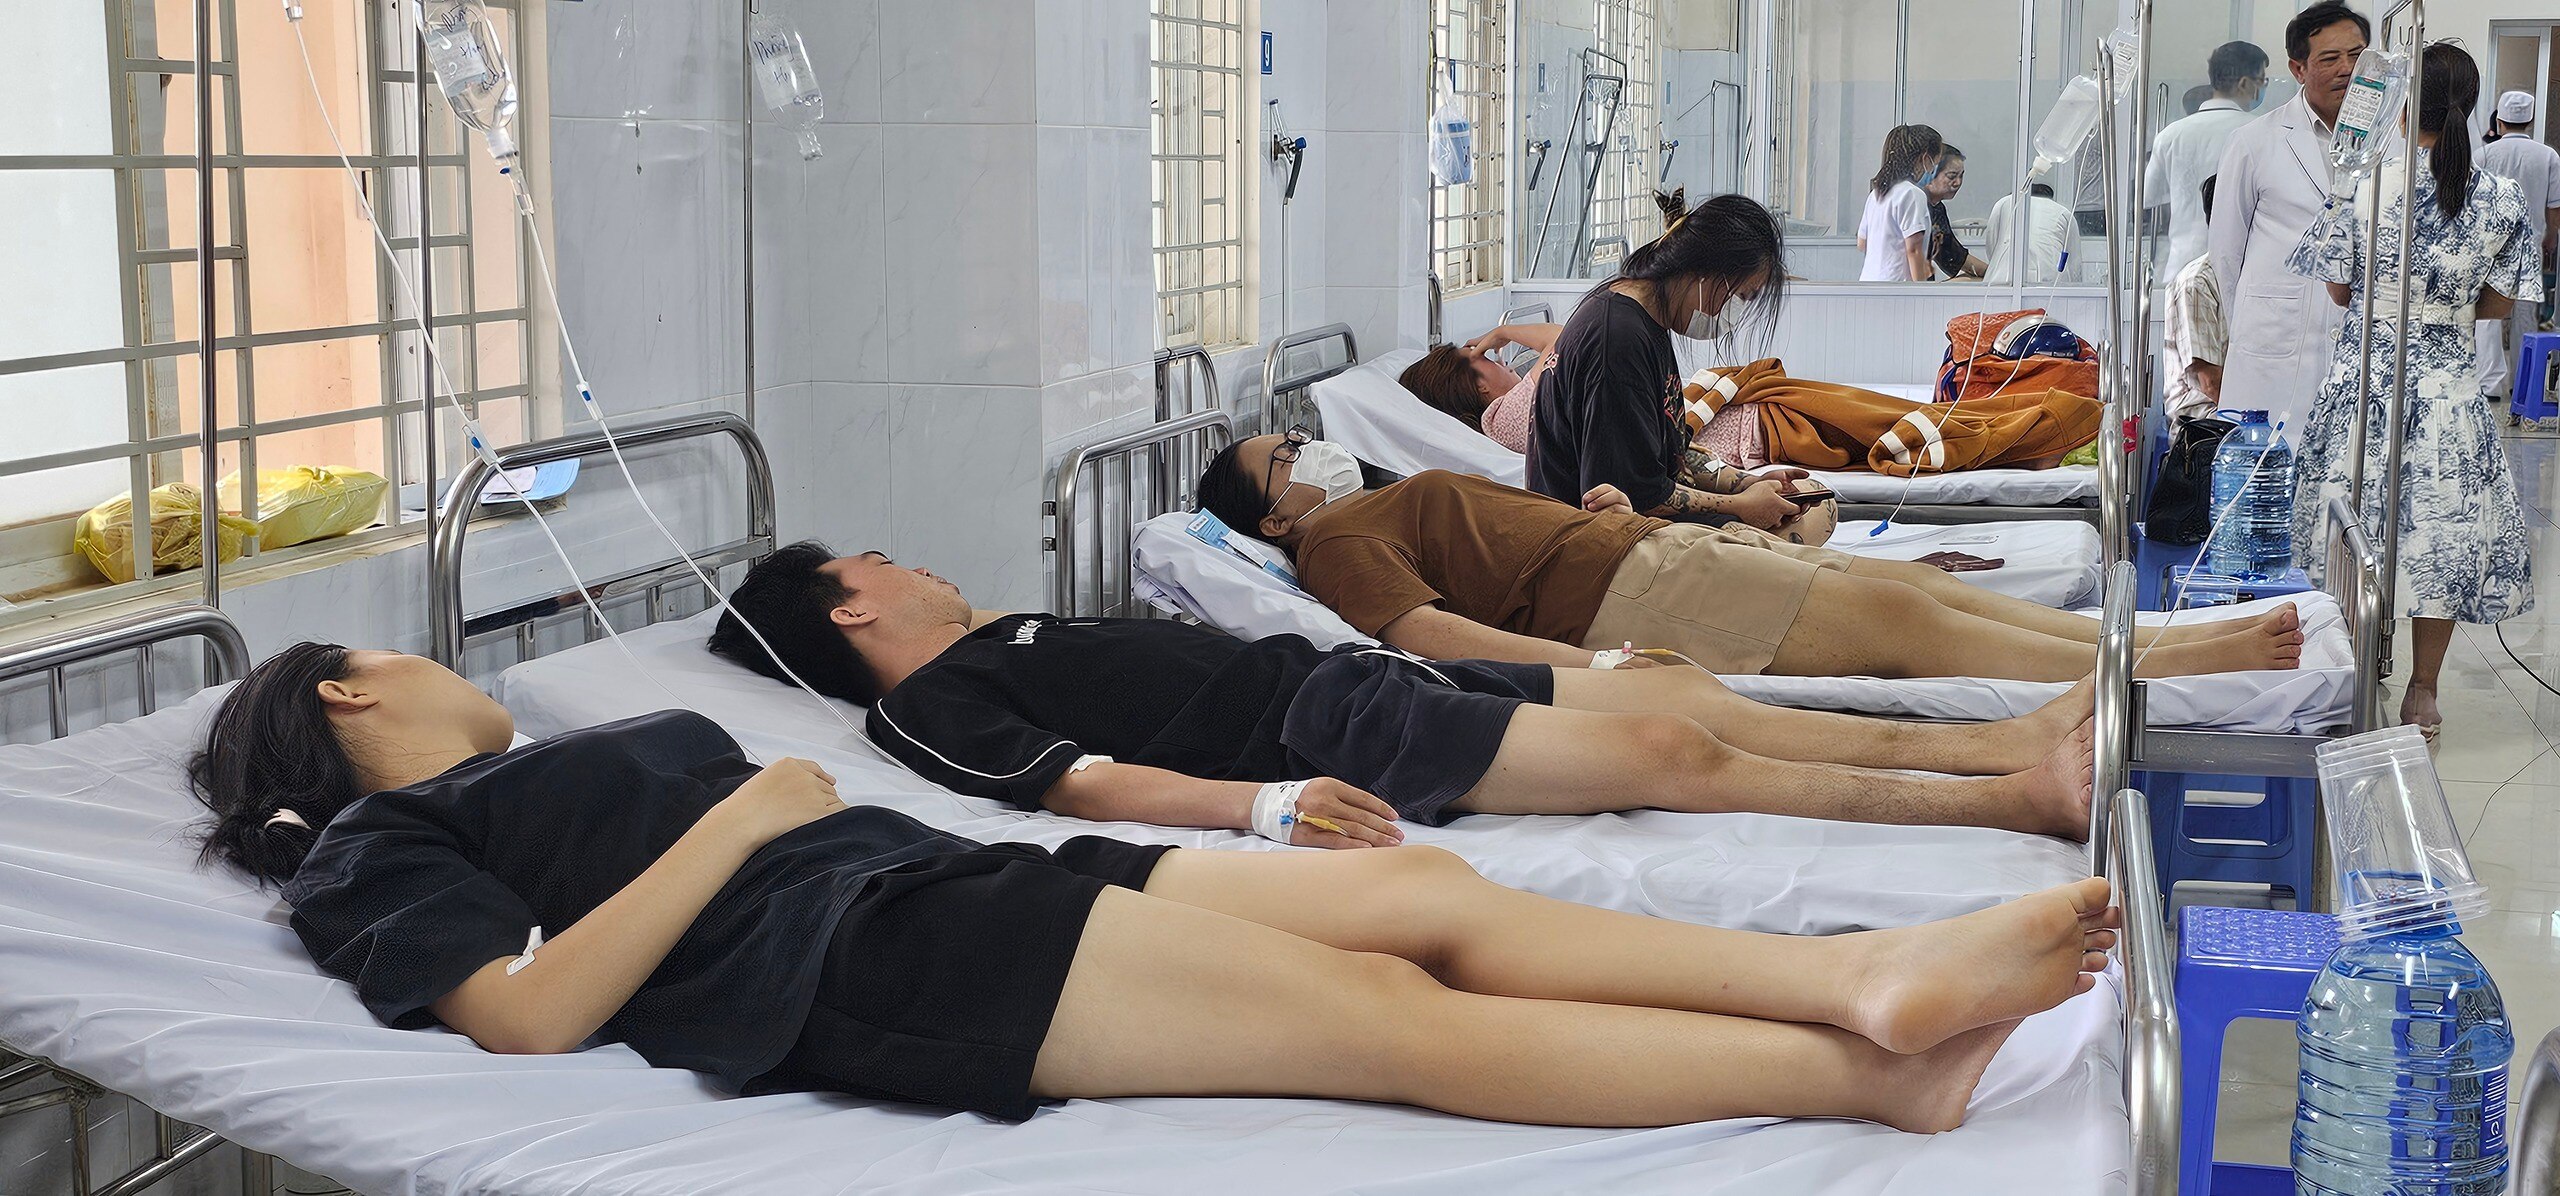 Tính đến 6 giờ 4.5, tổng số ca bị ngộ độc bánh mì ở Đồng Nai là 529 (có 117 trẻ em)